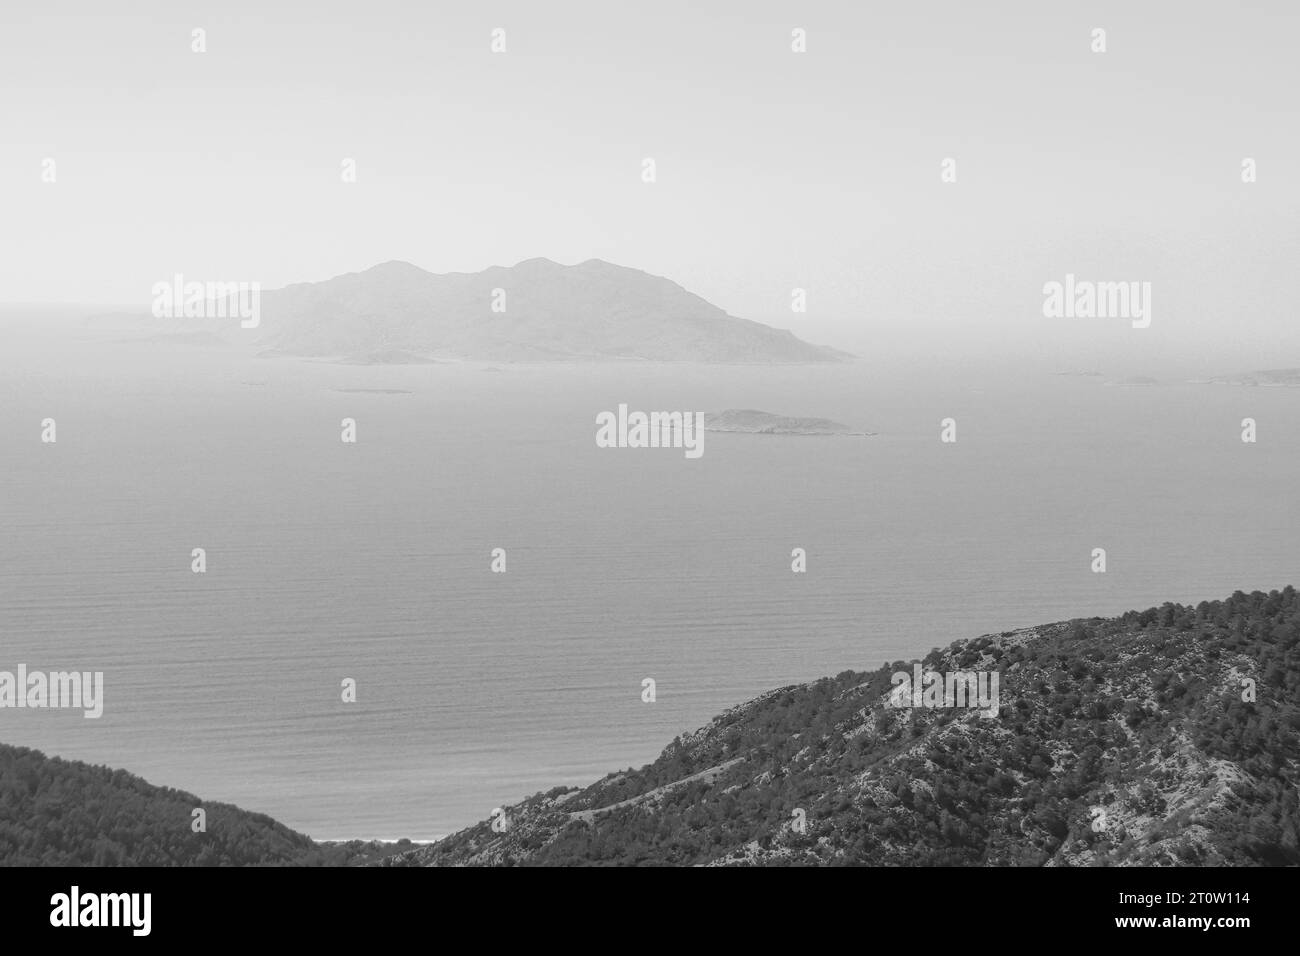 Vue côtière en noir et blanc d'une île Makri, l'une des Echinades, dans le groupe des îles Ioniennes vu de l'île de Rhodes Banque D'Images